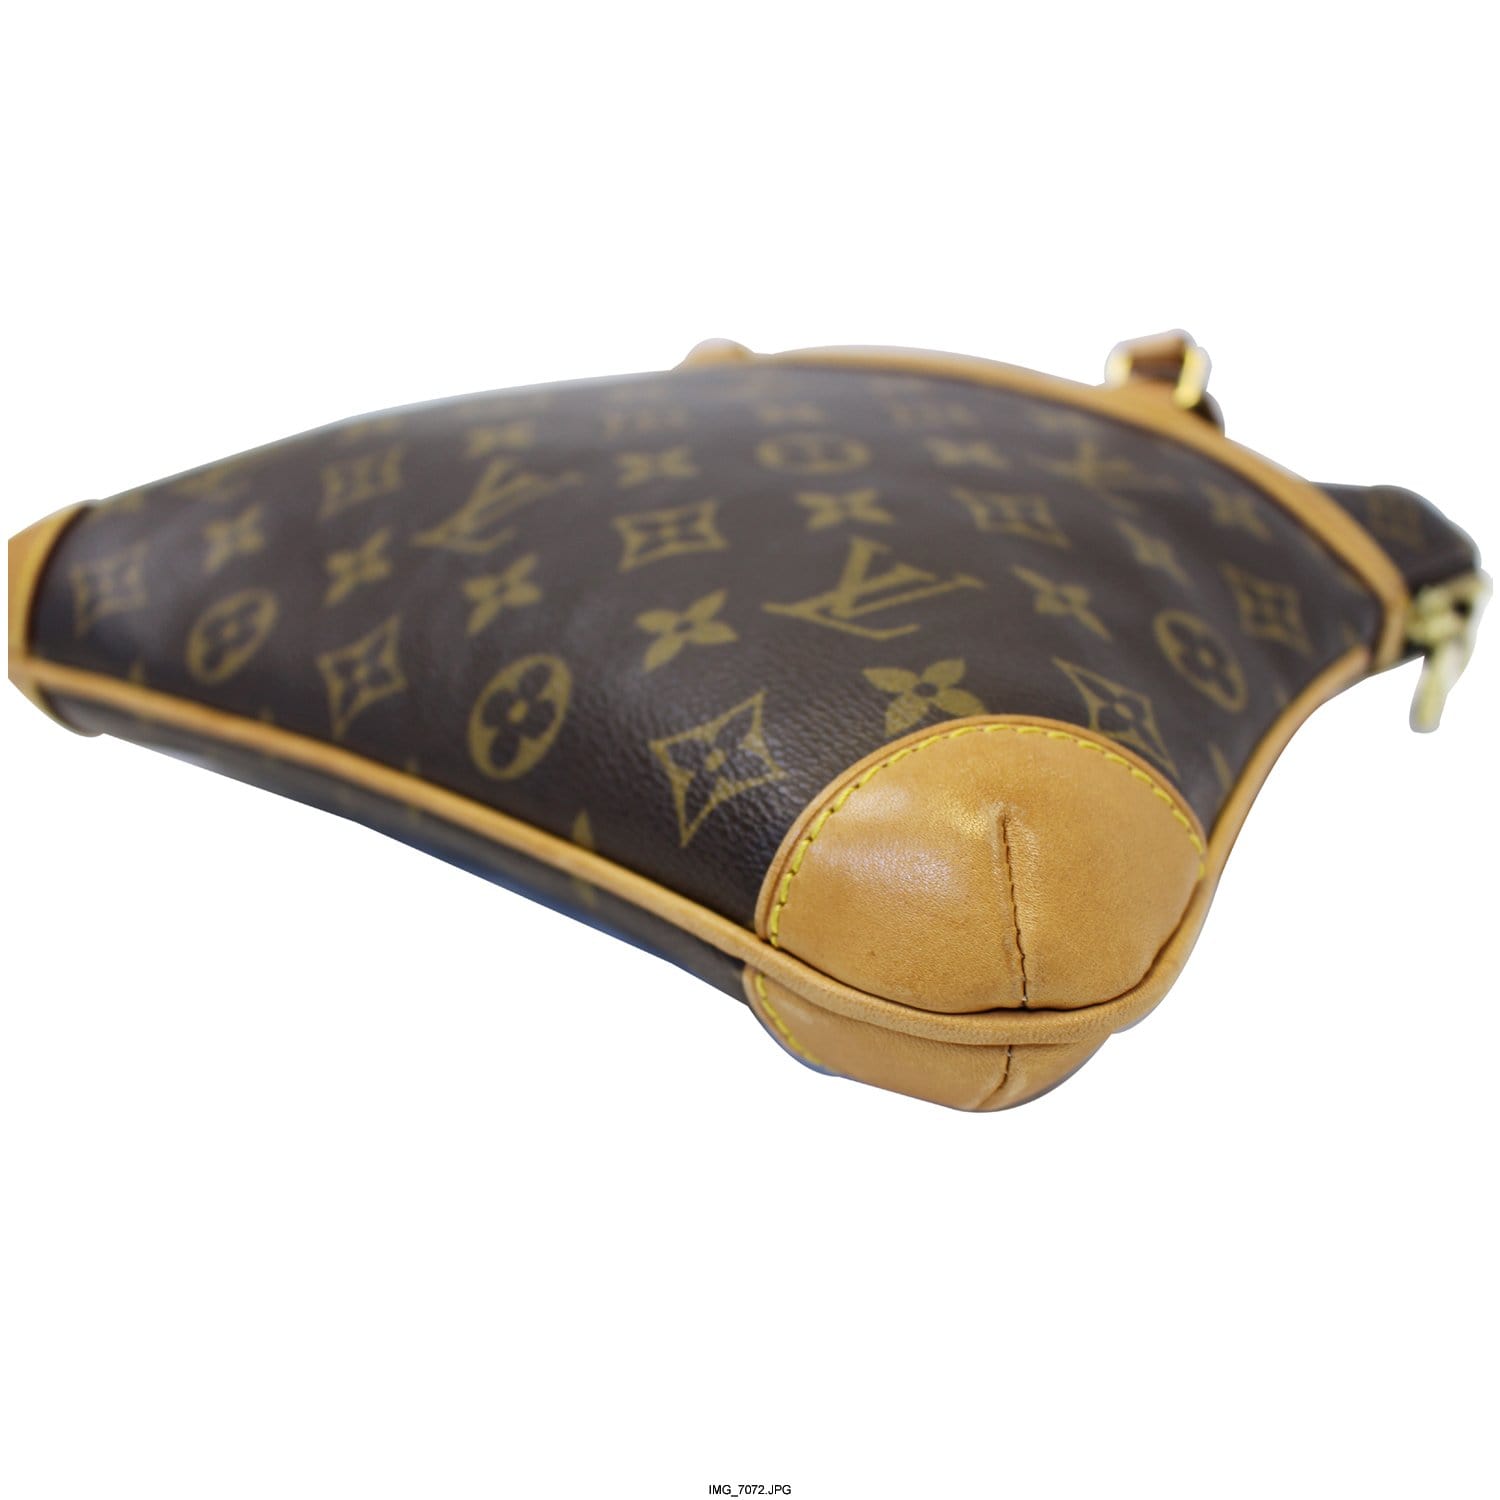 Sold at Auction: Louis Vuitton, LOUIS VUITTON COUSSIN SHOULDER BAG SIZE GM